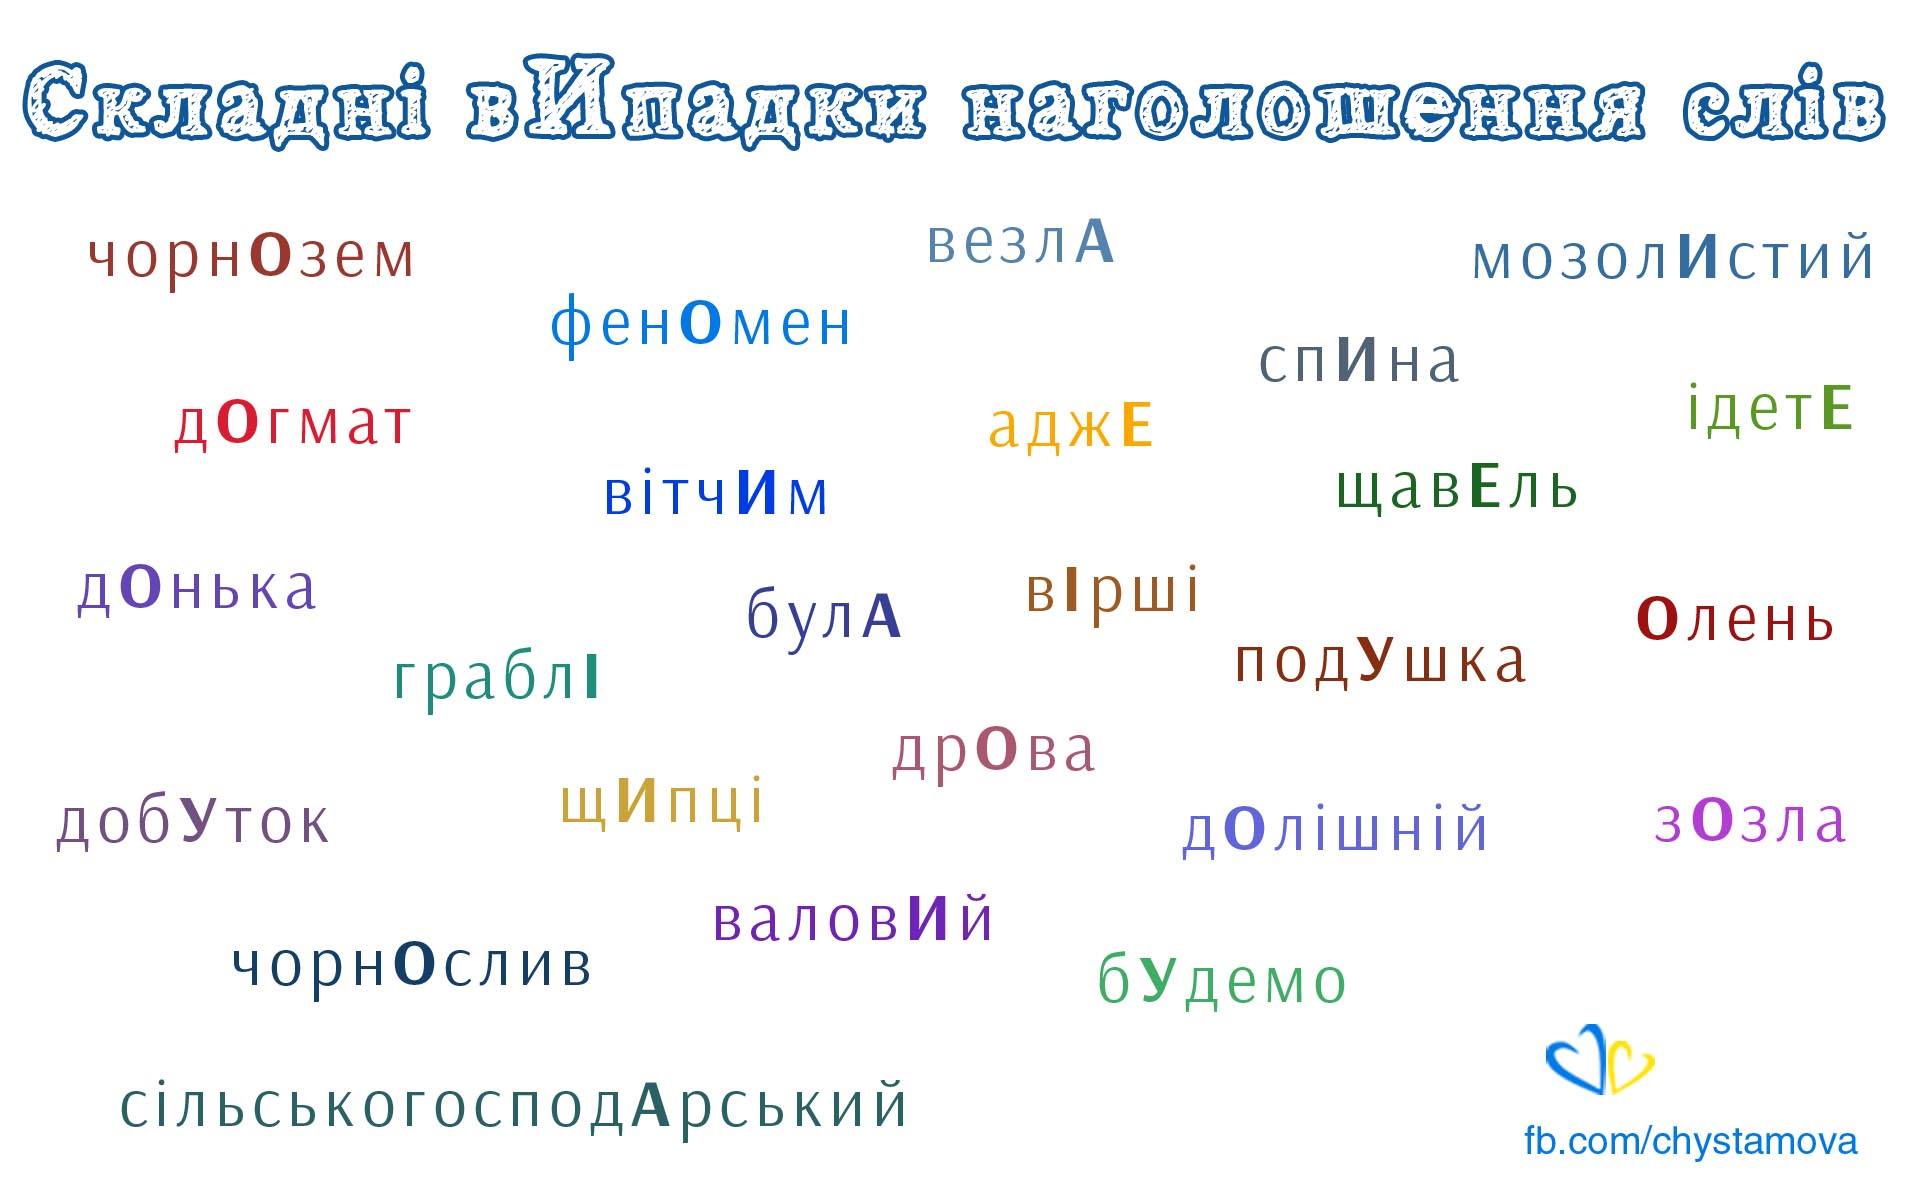 Наголос в українській мові